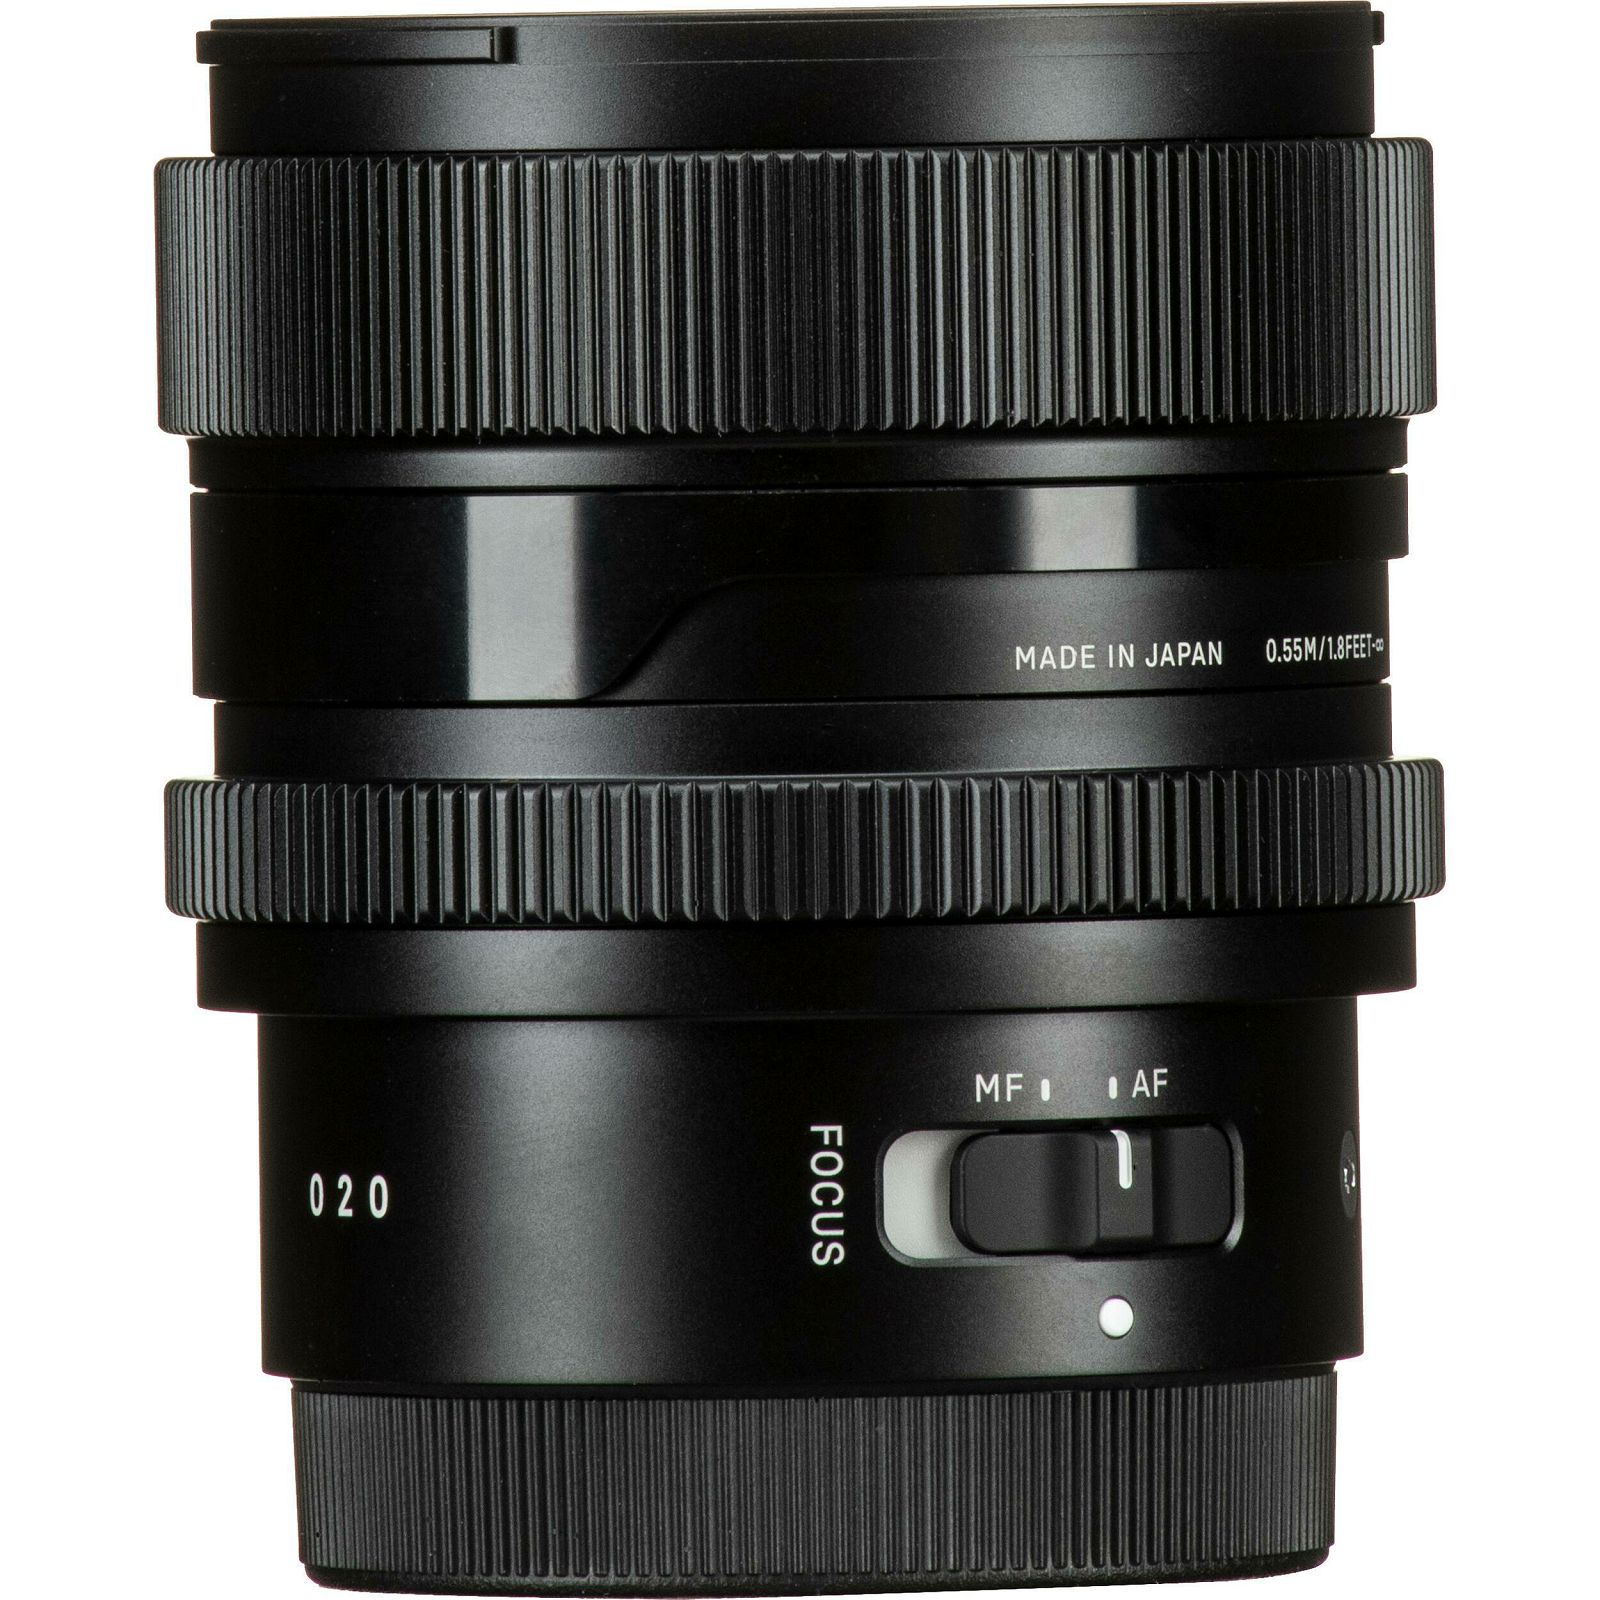 Sigma 65mm f/2 DG DN Contemporary objektiv za Sony FE E-mount